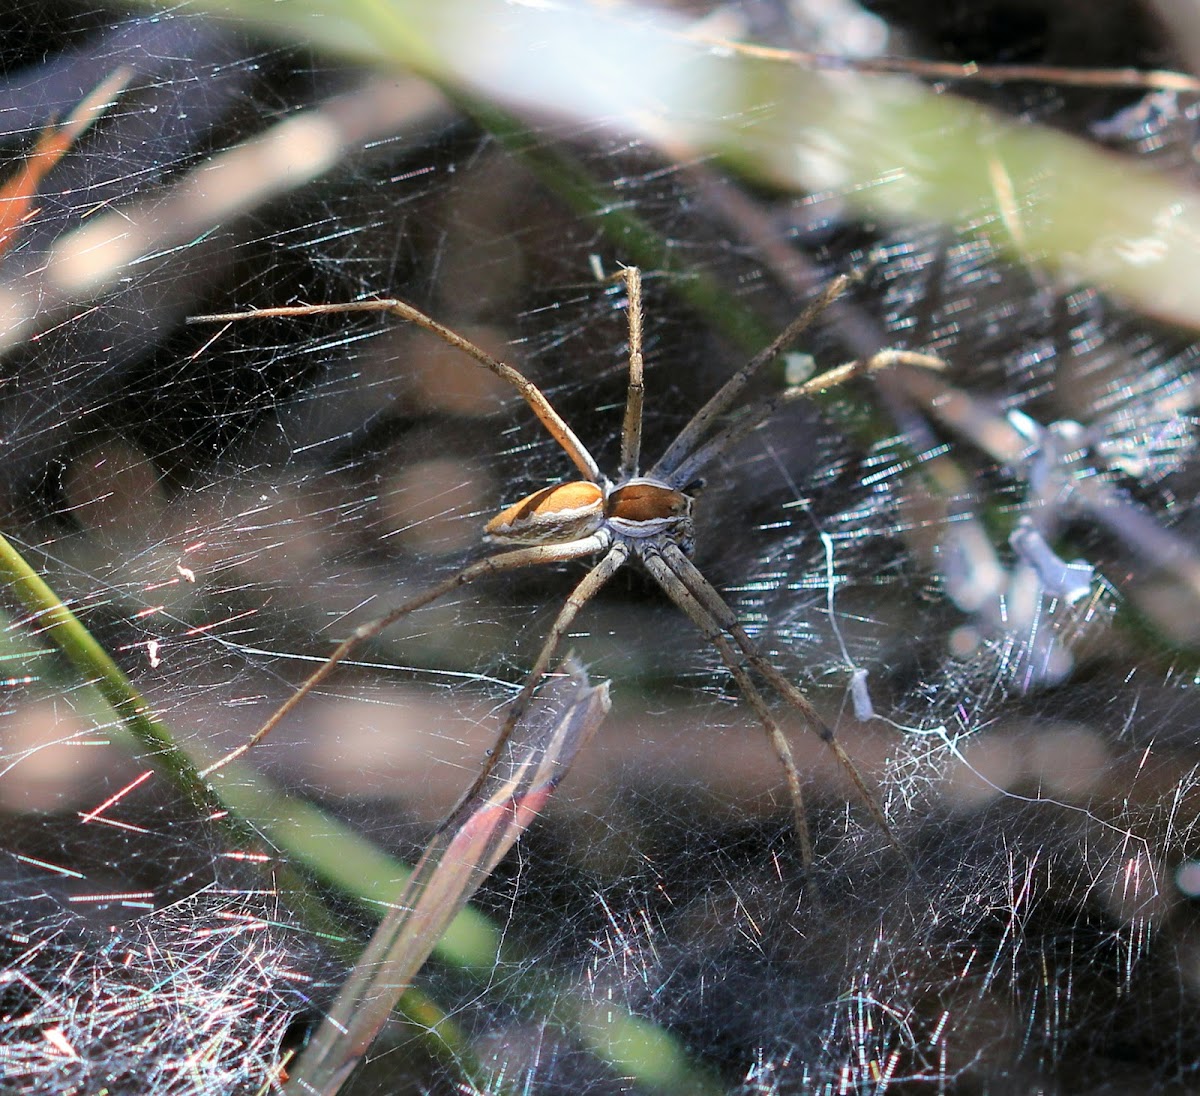 Sheet-web spider